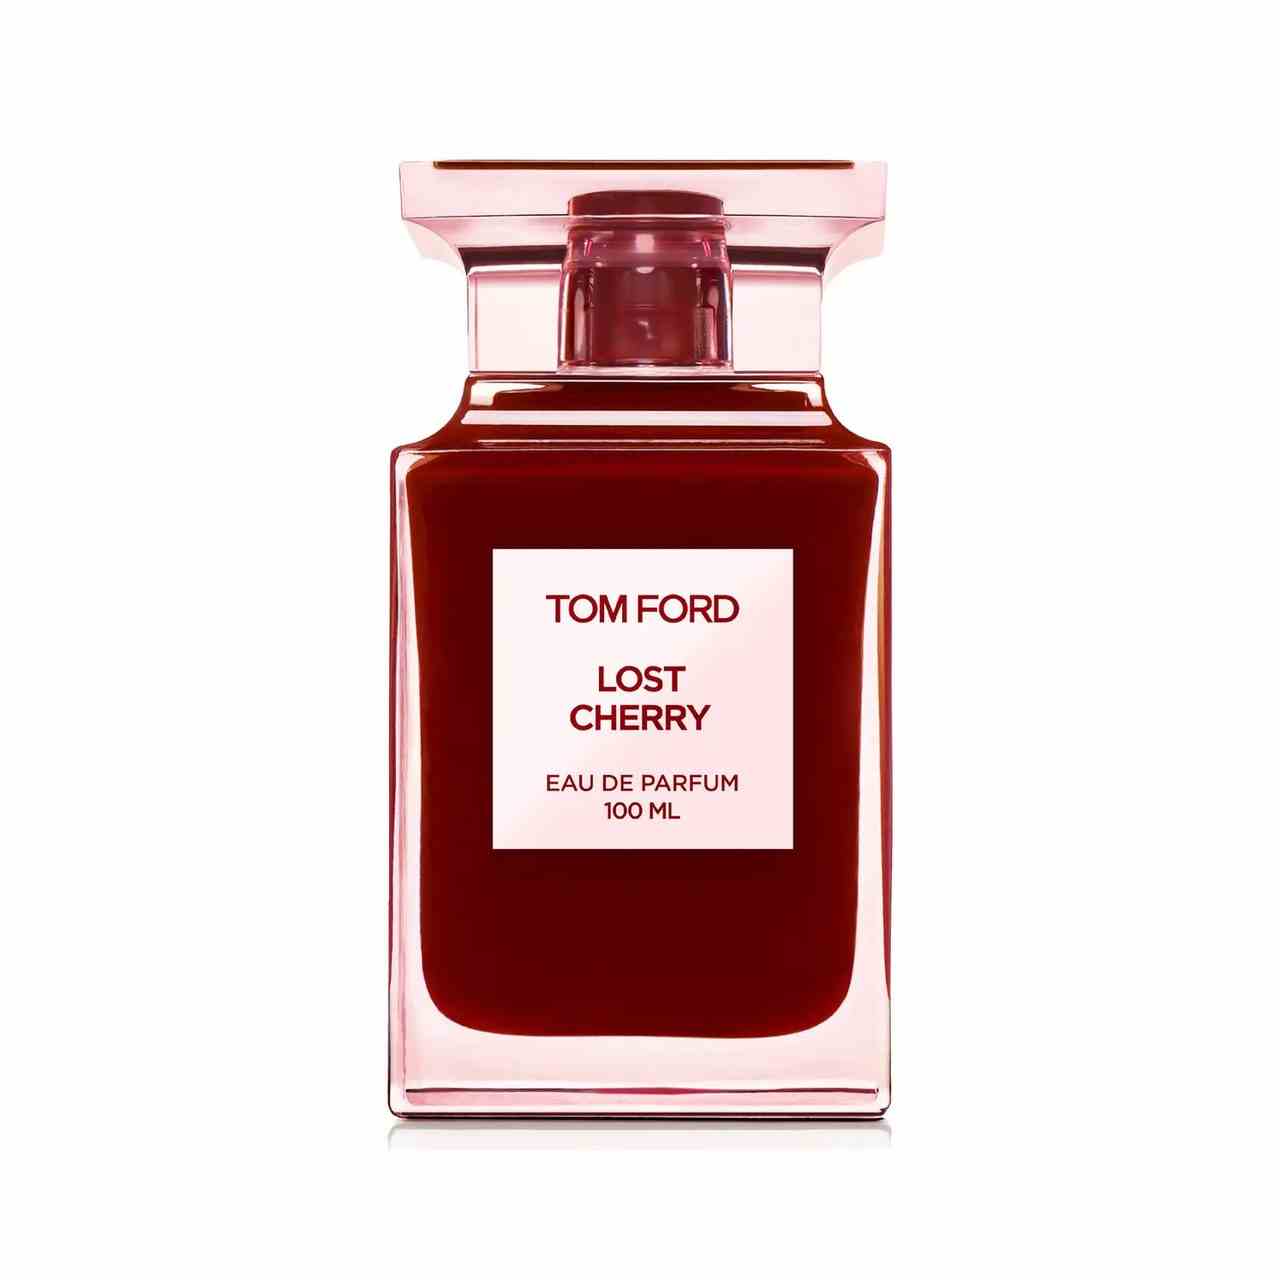 Tom Ford Lost Cherry Eau de Parfum rote Flasche Parfüm auf weißem Hintergrund